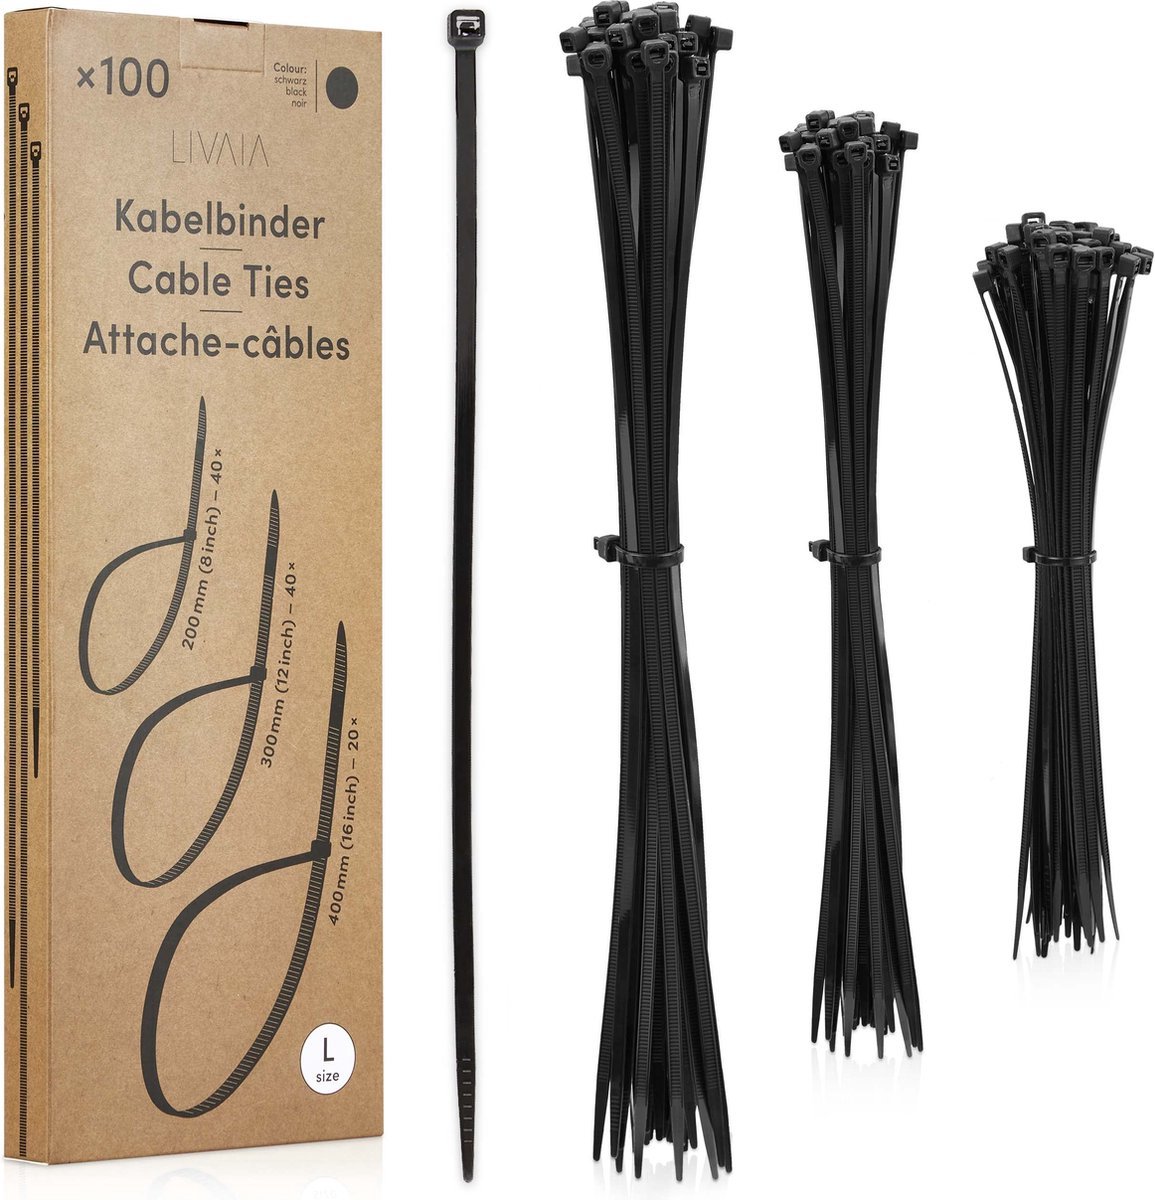 Livaia® Kabelbinderset Zwart: 100 Lange Kabelbinders in 3 Maten - Kabelorganisator, Kabelmanagement - Kabelbinders 300mm, 200mm, 400mm